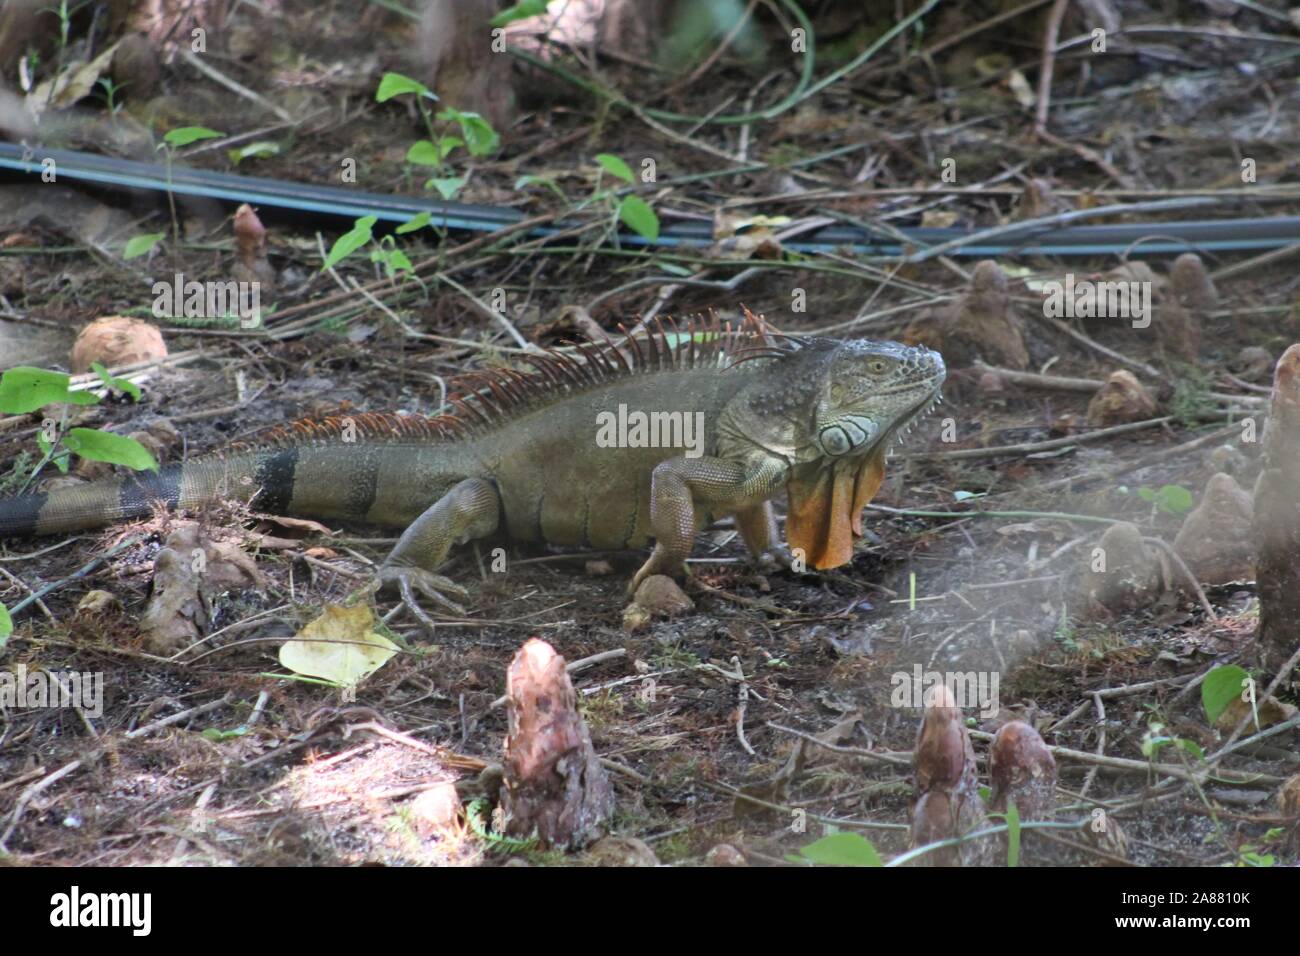 Oleta River State Park à Miami, Floride - l'iguane vert envahissantes causent des dommages à l'environnement Banque D'Images